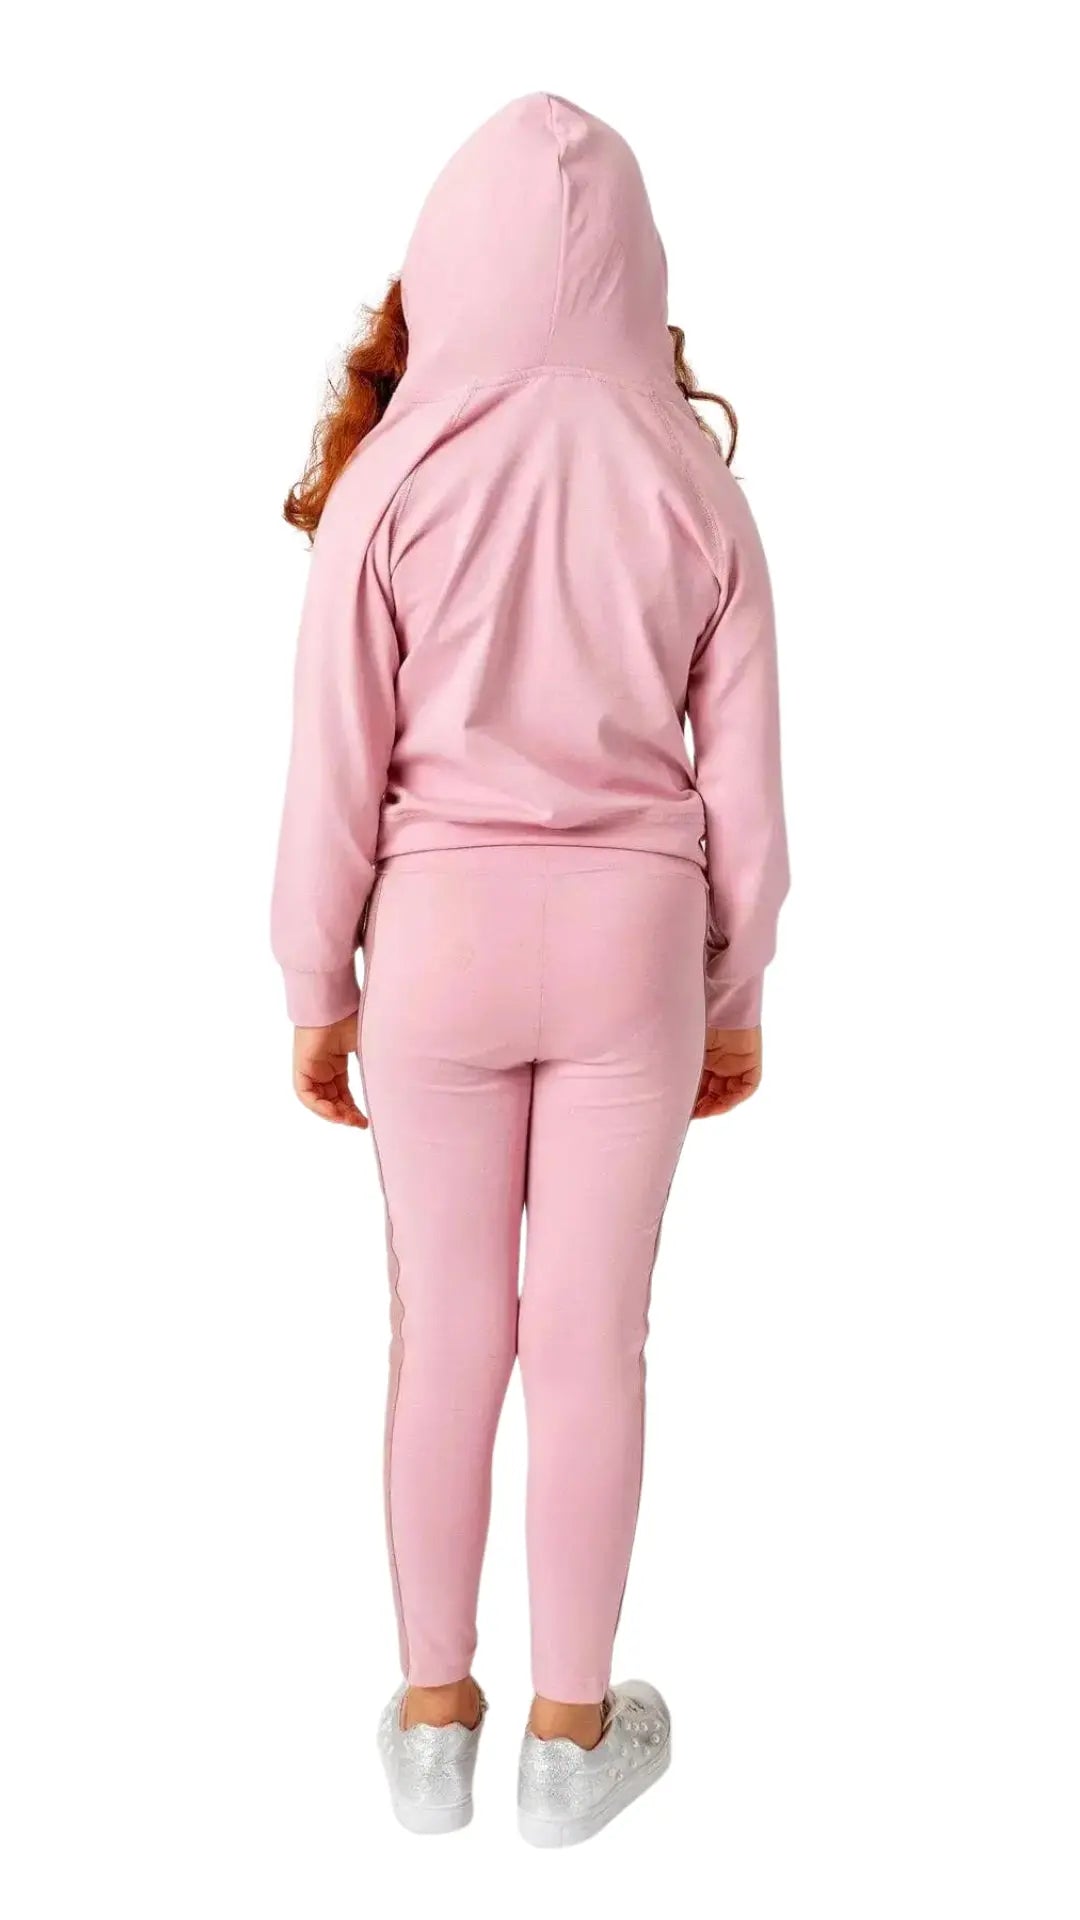 InCity Girls Tween 7-14 Years Regular Fit Pink Casual Long Sleeve Comfy Gunners Star Hoodie Sweatshirt InCity Boys & Girls